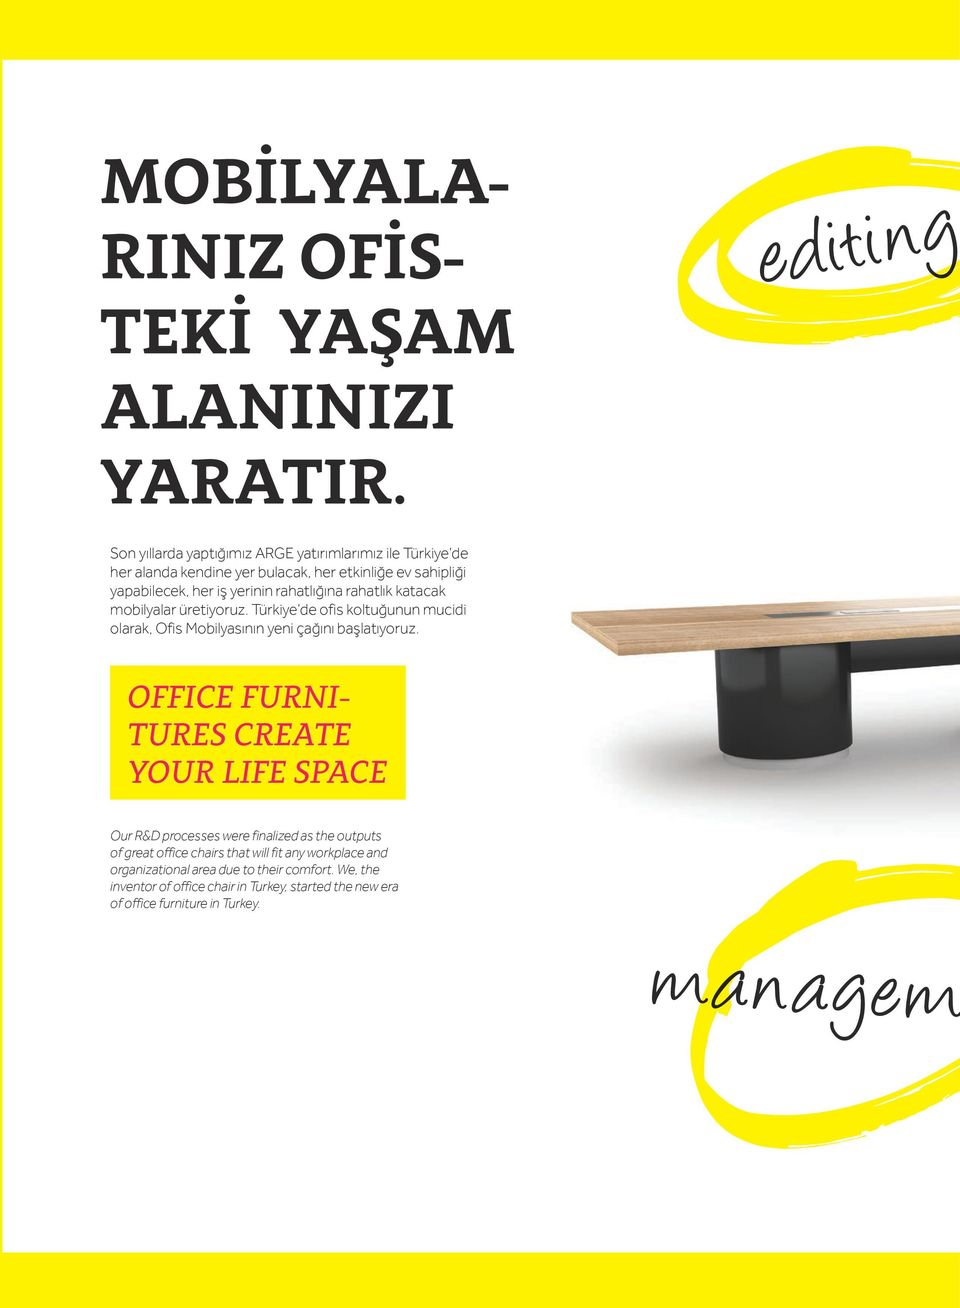 rahatlık katacak mobilyalar üretiyoruz. Türkiye de ofis koltuğunun mucidi olarak, Ofis Mobilyasının yeni çağını başlatıyoruz.